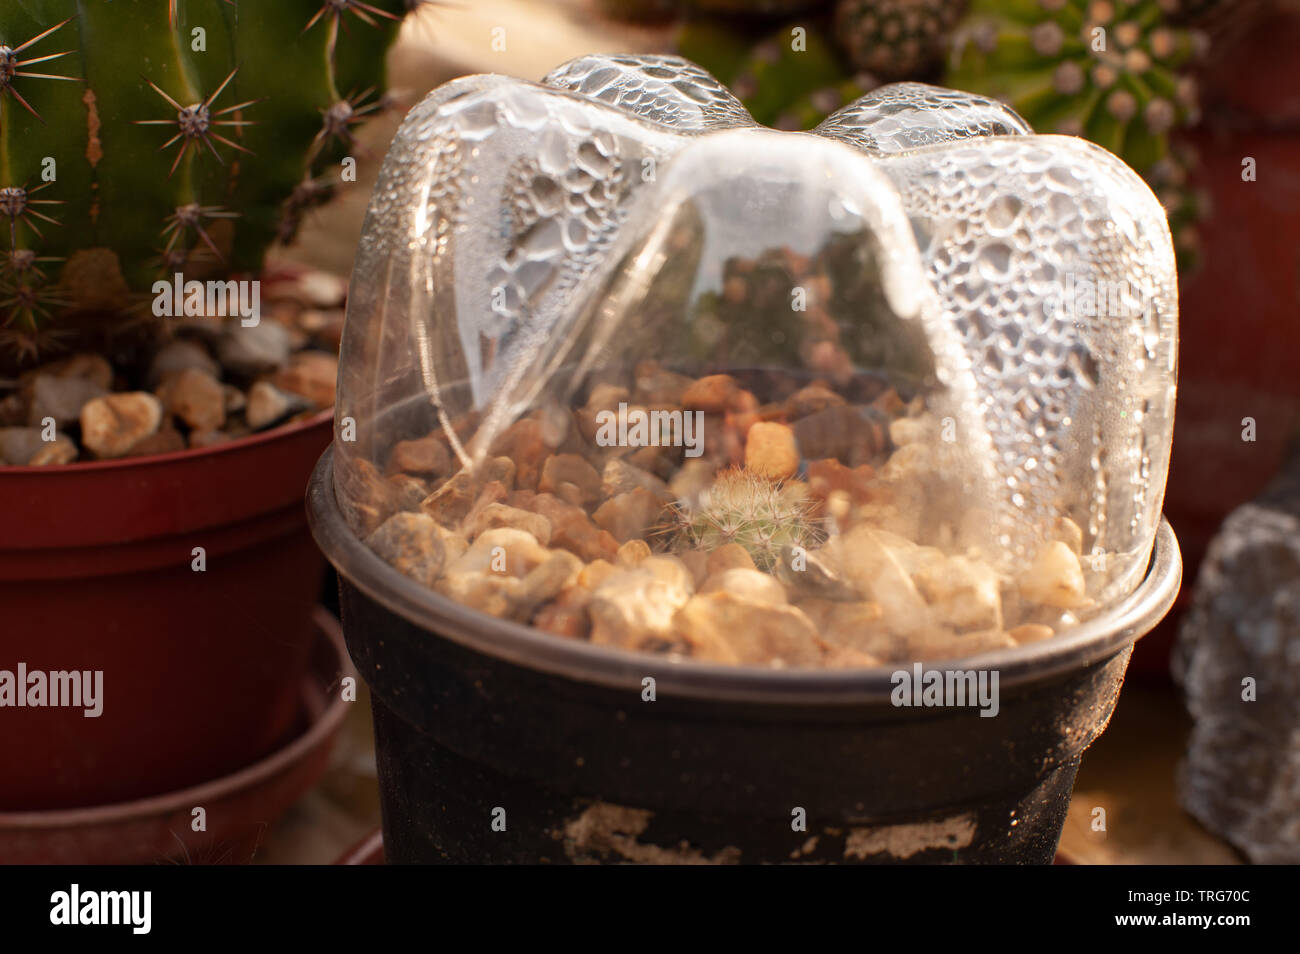 Vermehrungsmaterial Cactus schießt, Stecklinge und Förderung einer neuen Anlage in feuchten Behälter zu wachsen, Echinopsis, Echinopsis subdenudata, Ostern Lily Cactus Stockfoto